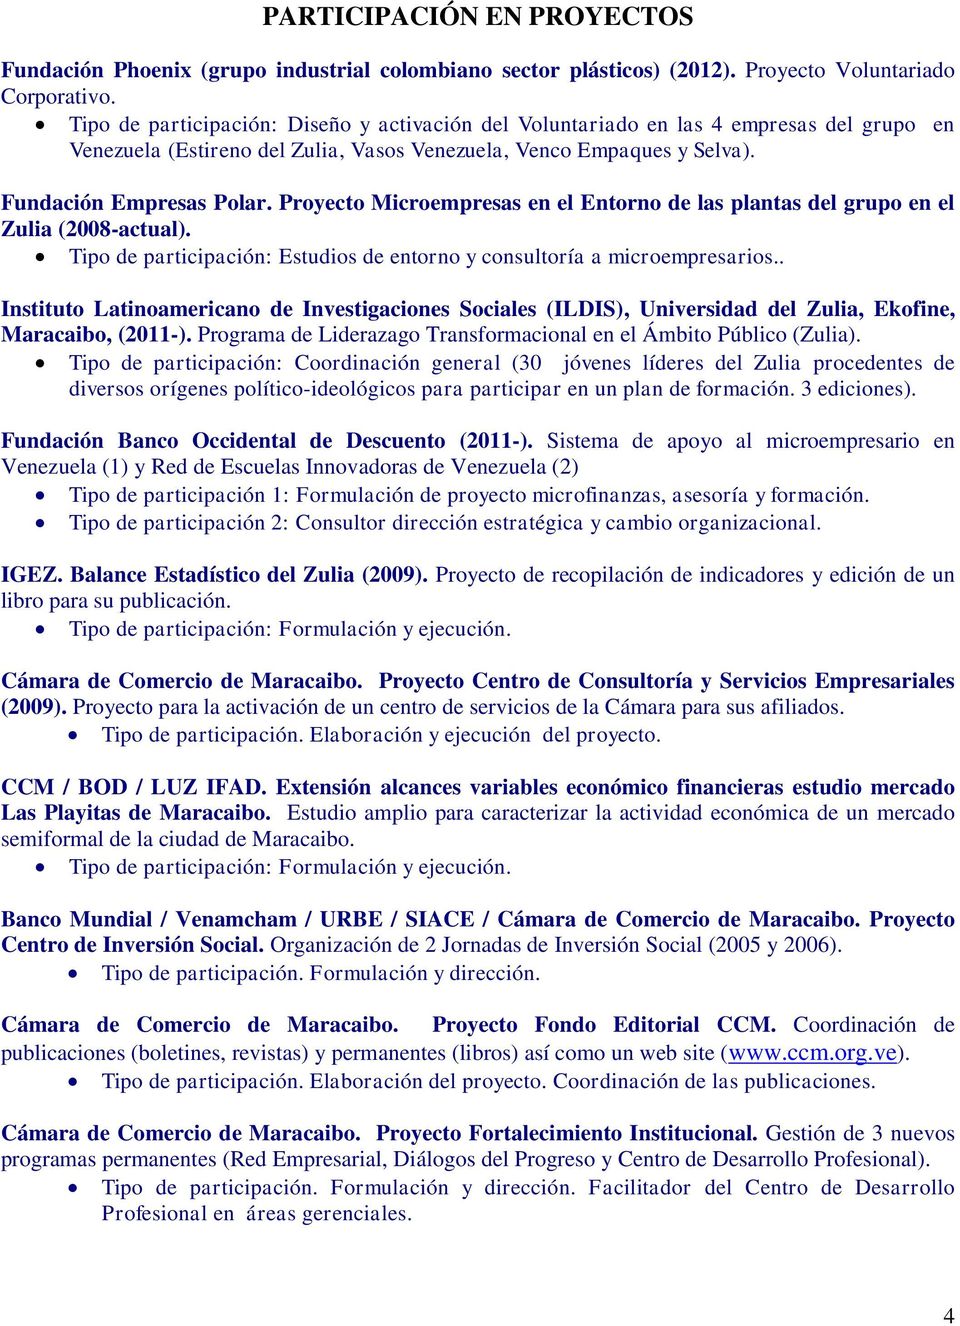 Proyecto Microempresas en el Entorno de las plantas del grupo en el Zulia (2008-actual). Tipo de participación: Estudios de entorno y consultoría a microempresarios.